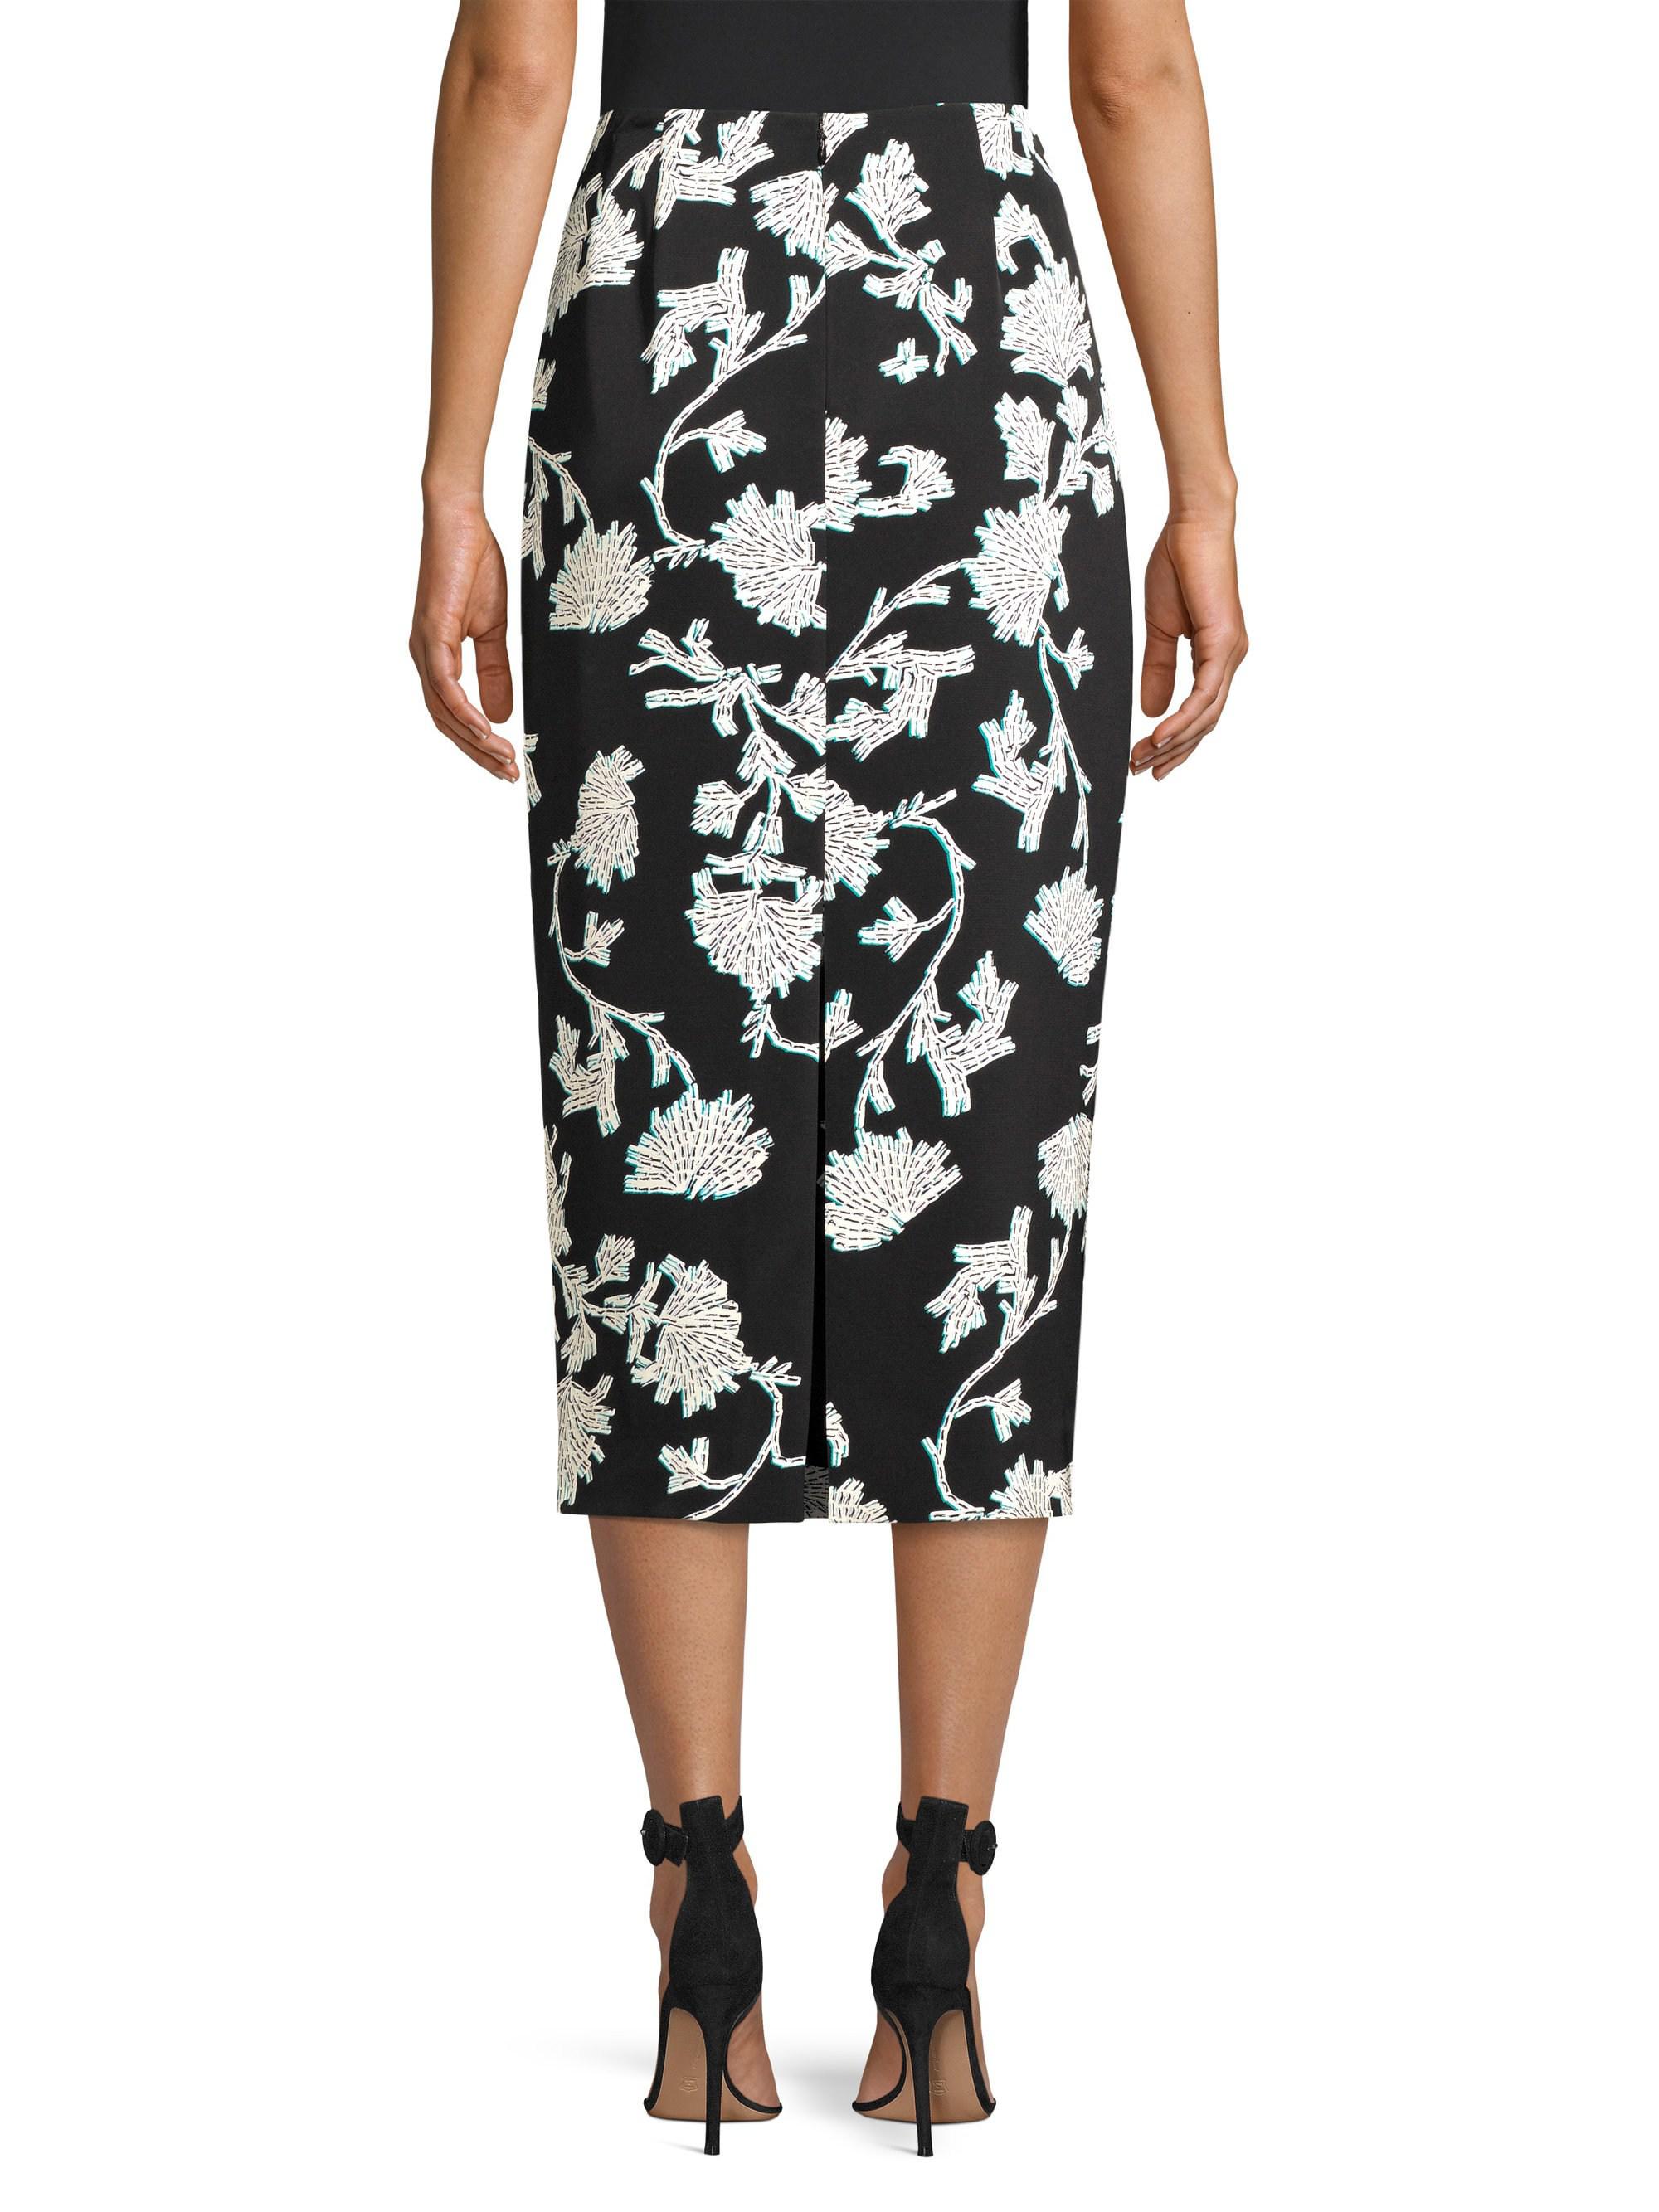 Diane von Furstenberg Synthetic Kara Flower Skirt in Black - Lyst